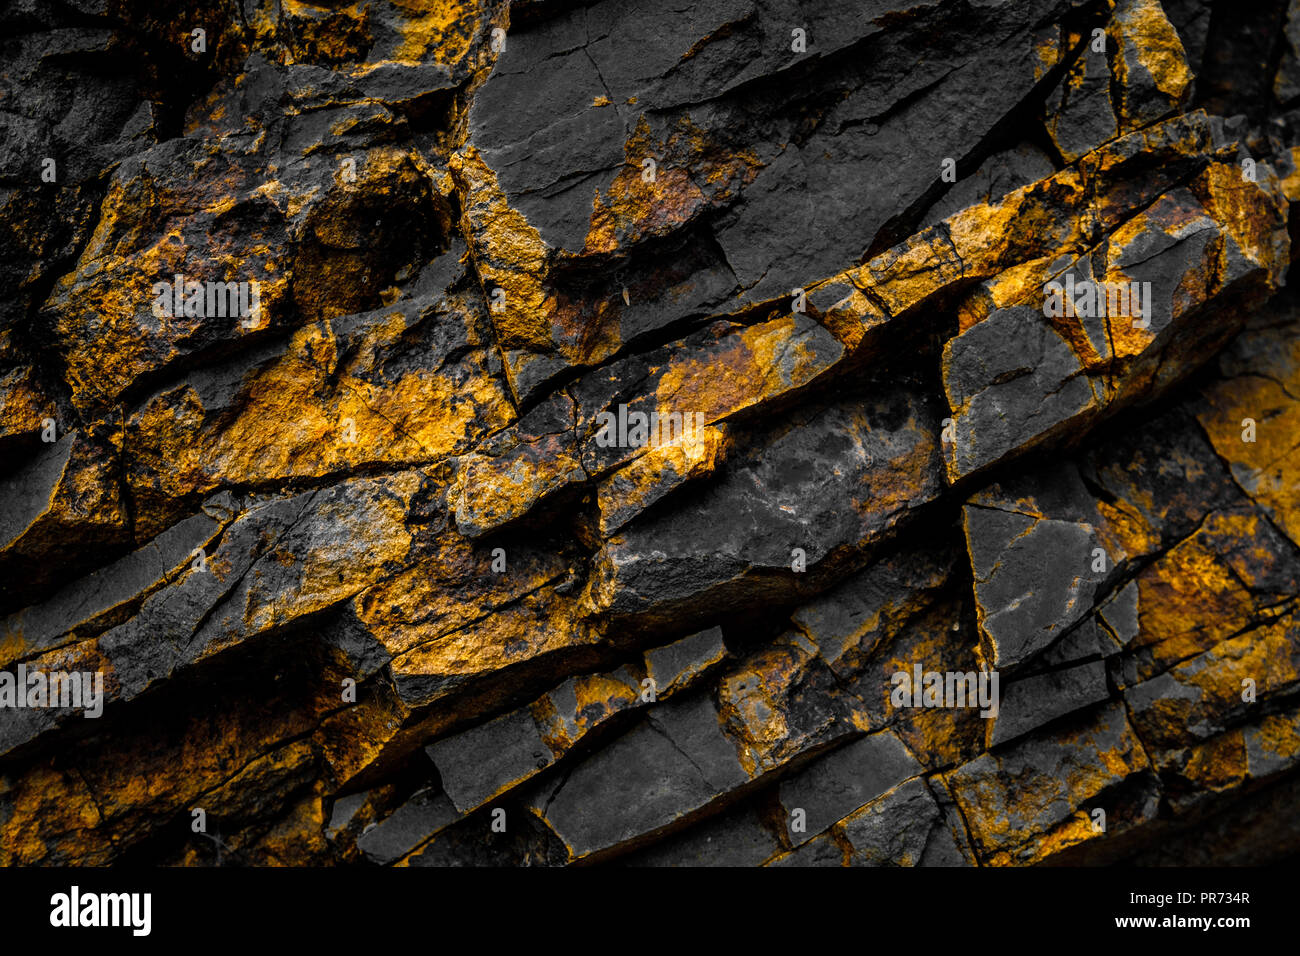 Black Rock sfondo con oro giallo / rocce colorate - Foto Stock